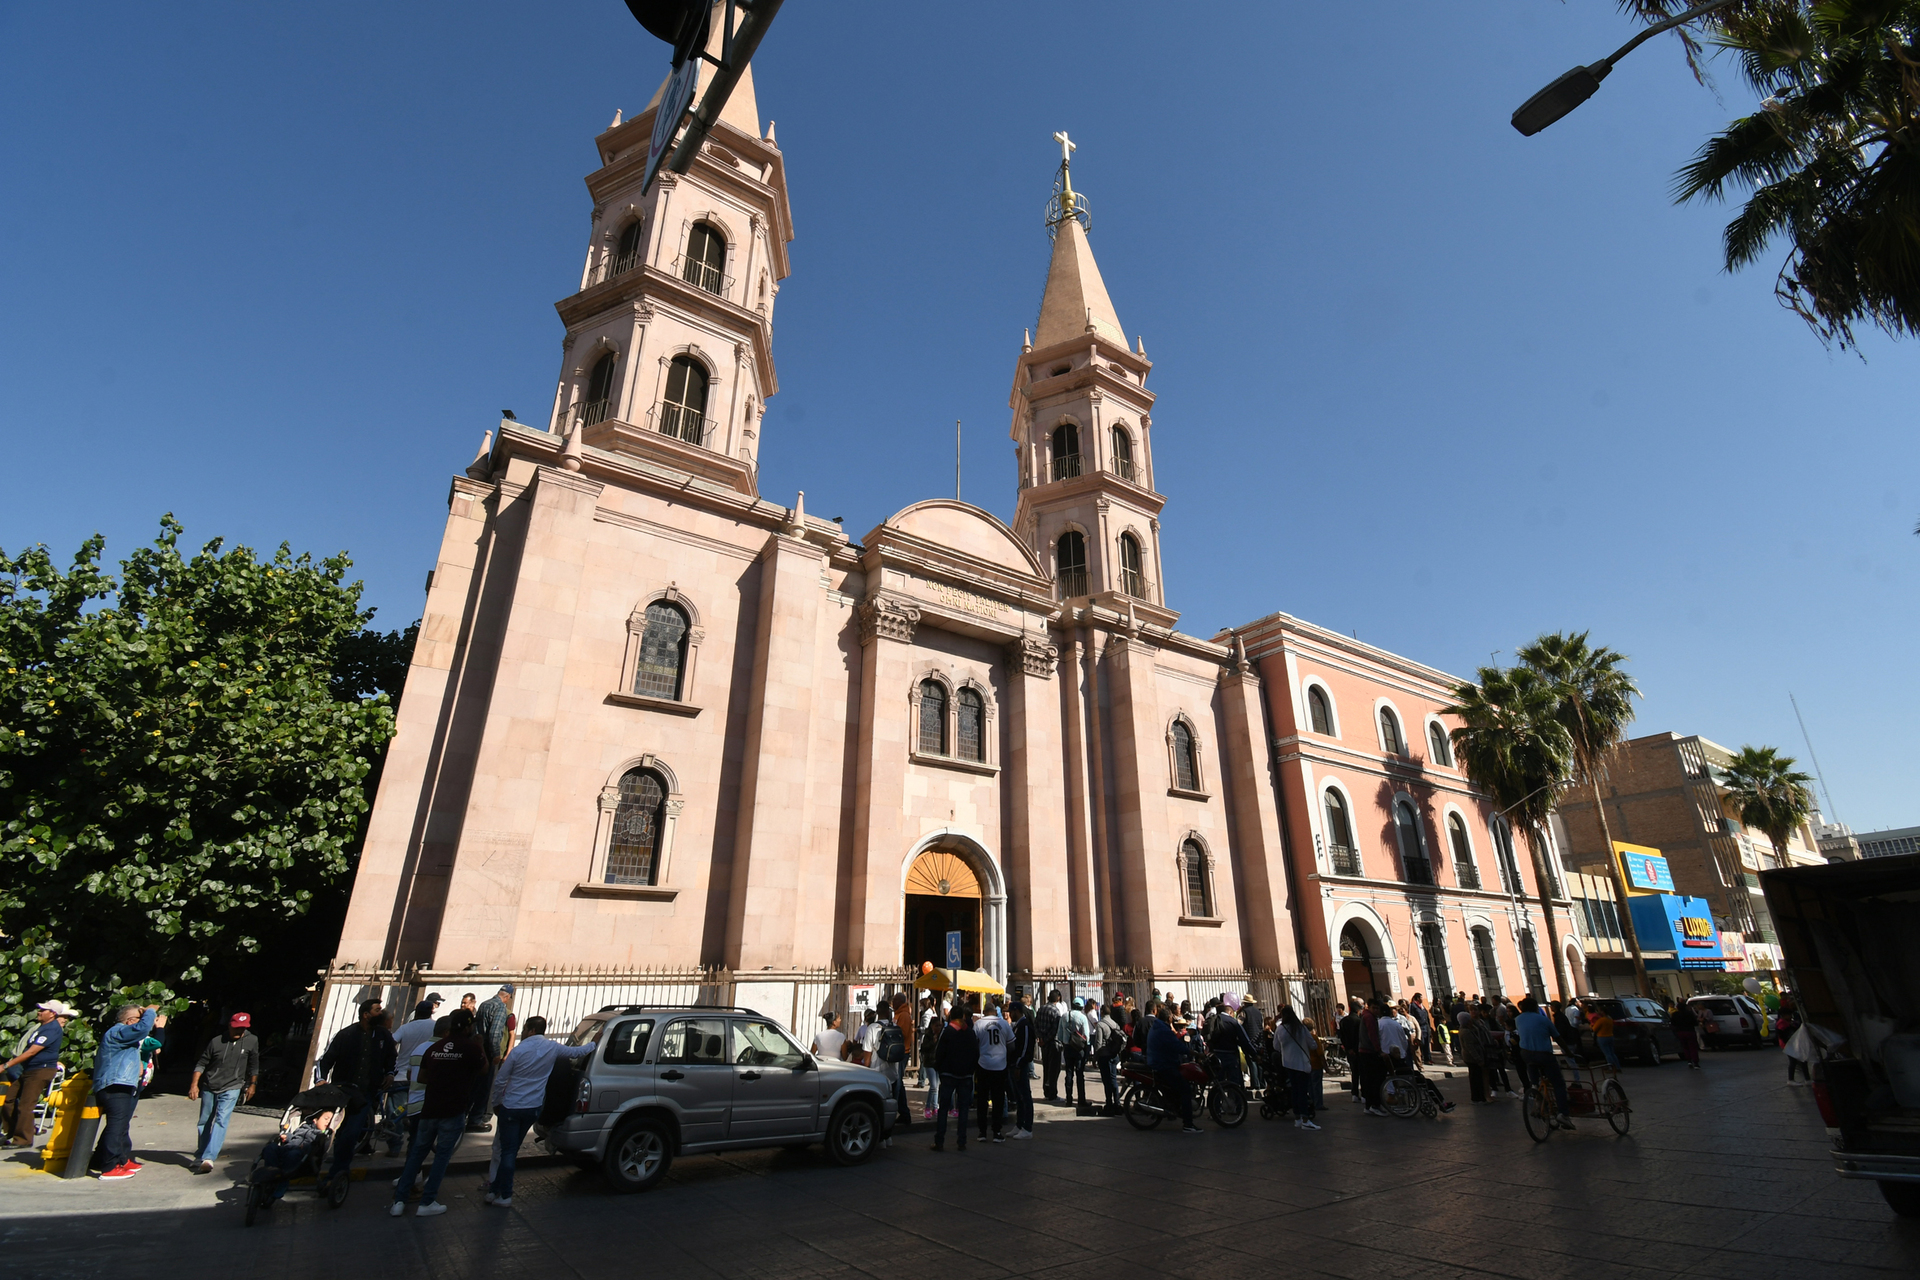 Más de 100 mil fieles se esperan durante la temporada de peregrinaciones a la Virgen de Guadalupe en Torreón